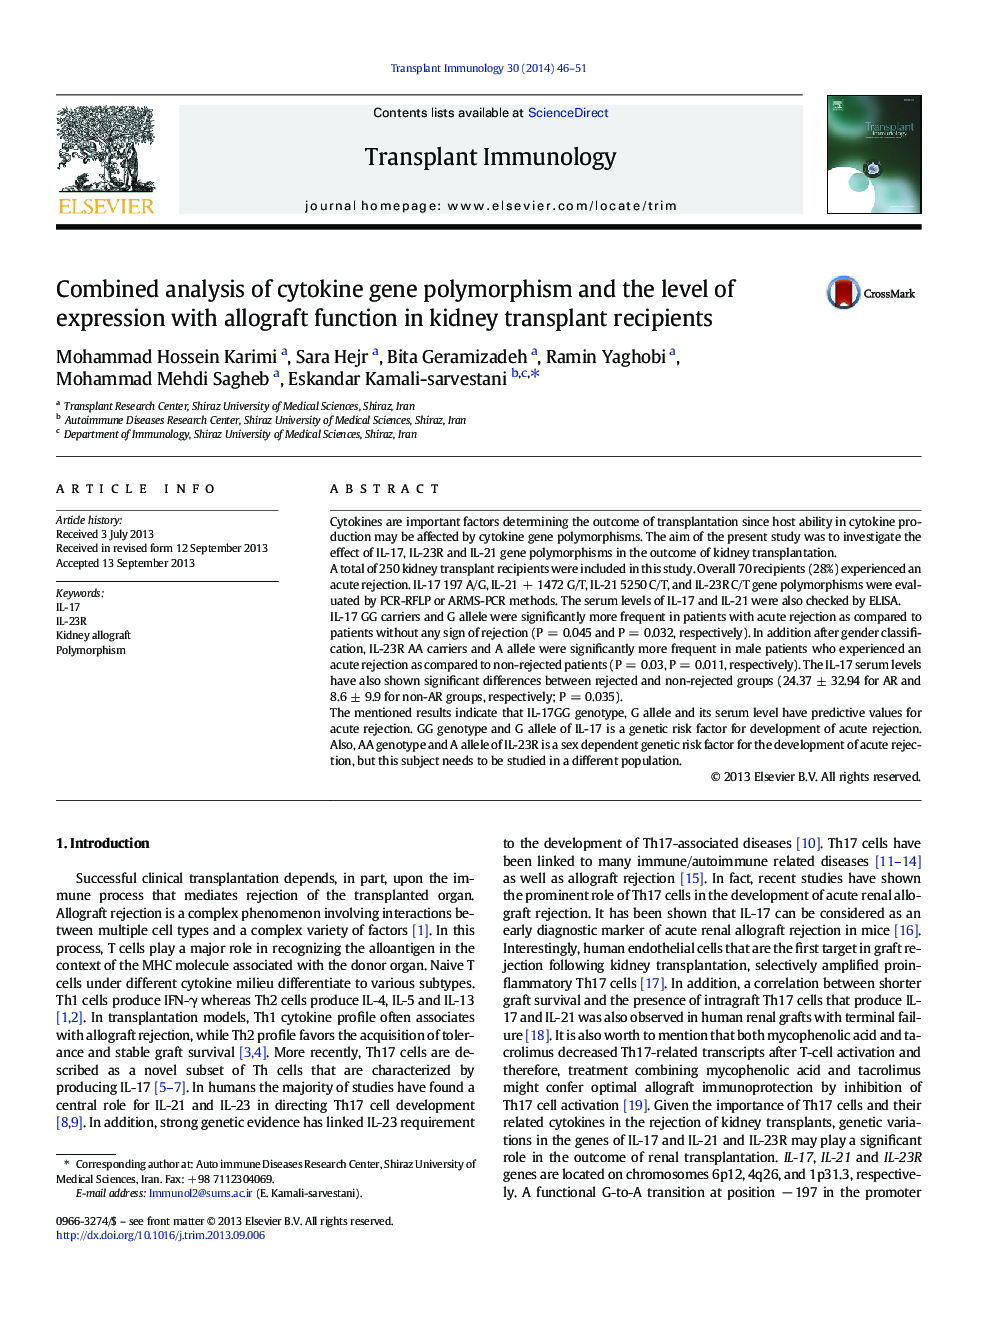 تجزیه و تحلیل ترکیبی پلی مورفیسم ژن سیتوکین و سطح بیان با عملکرد آلوگرافت در گیرنده های پیوند کلیه 